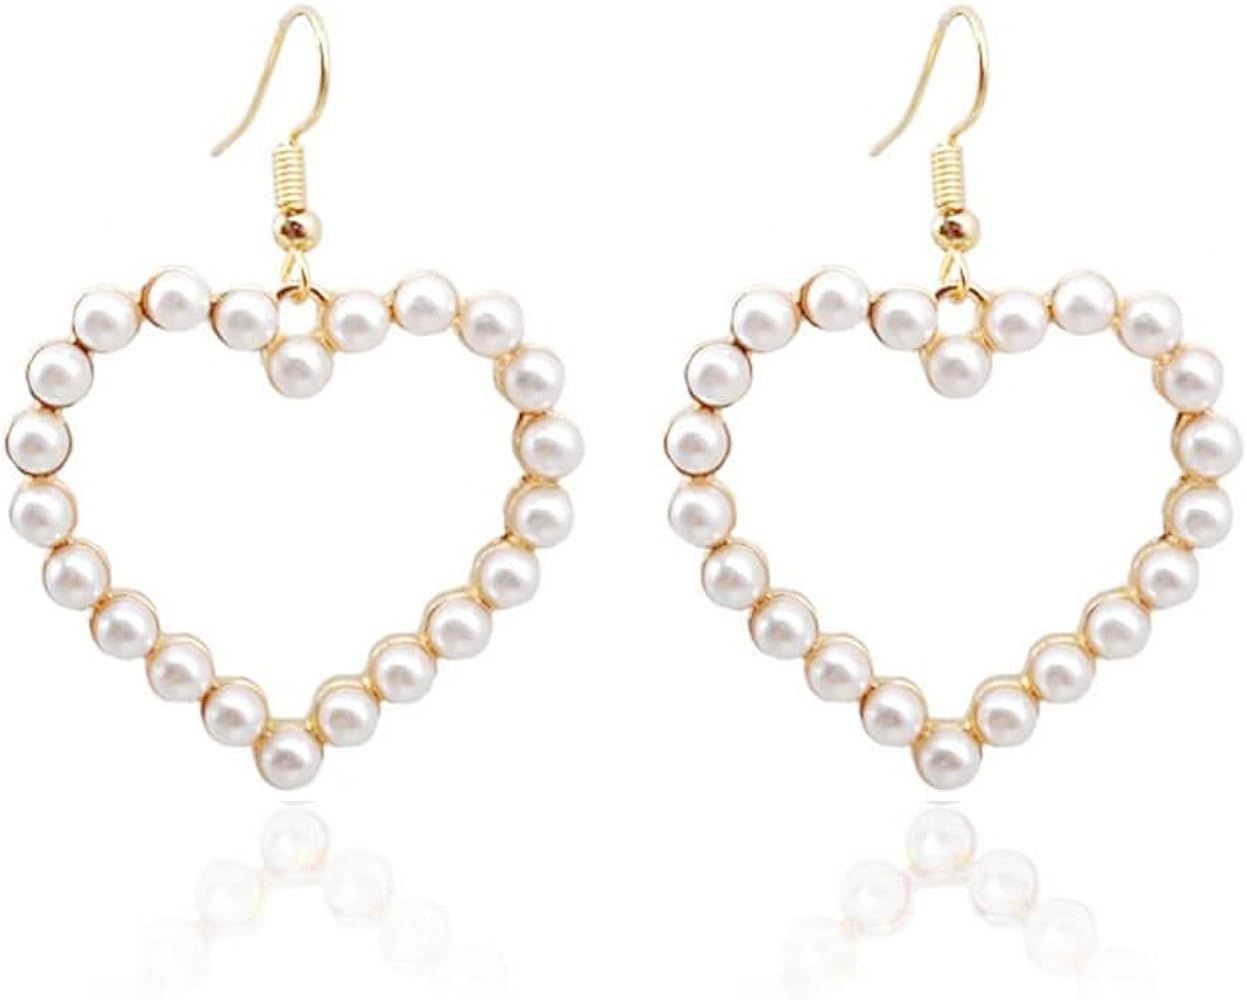 366DAYS 14k Gold/Silver Plated Pearl Drop Dangle Earrings for Women Long Chain Tassel Earrings St... | Amazon (US)